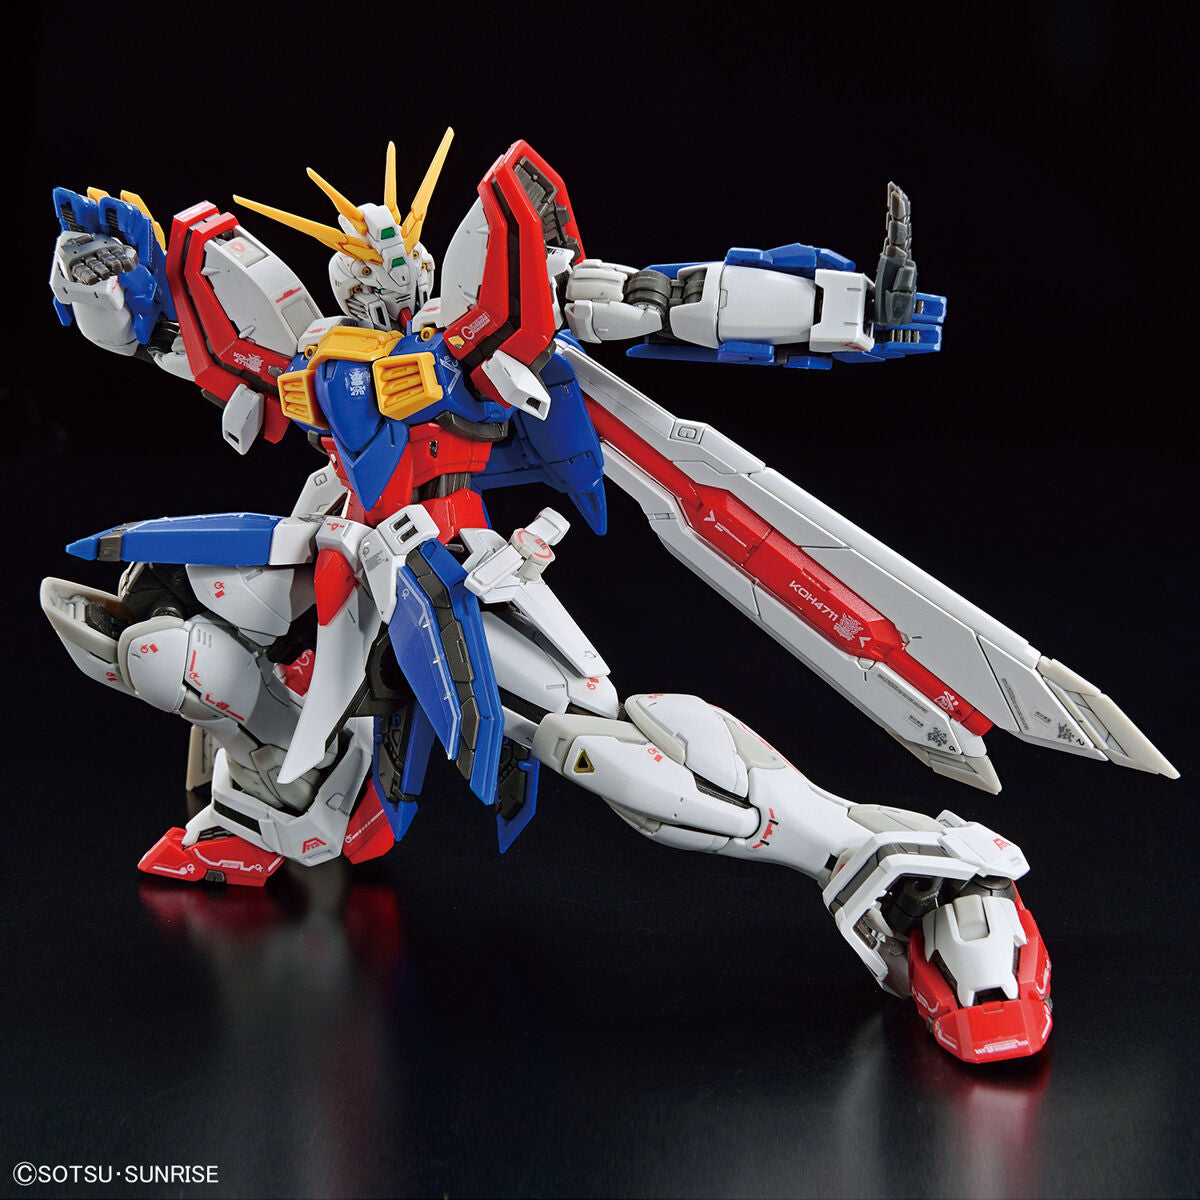 RG God Gundam 1/144